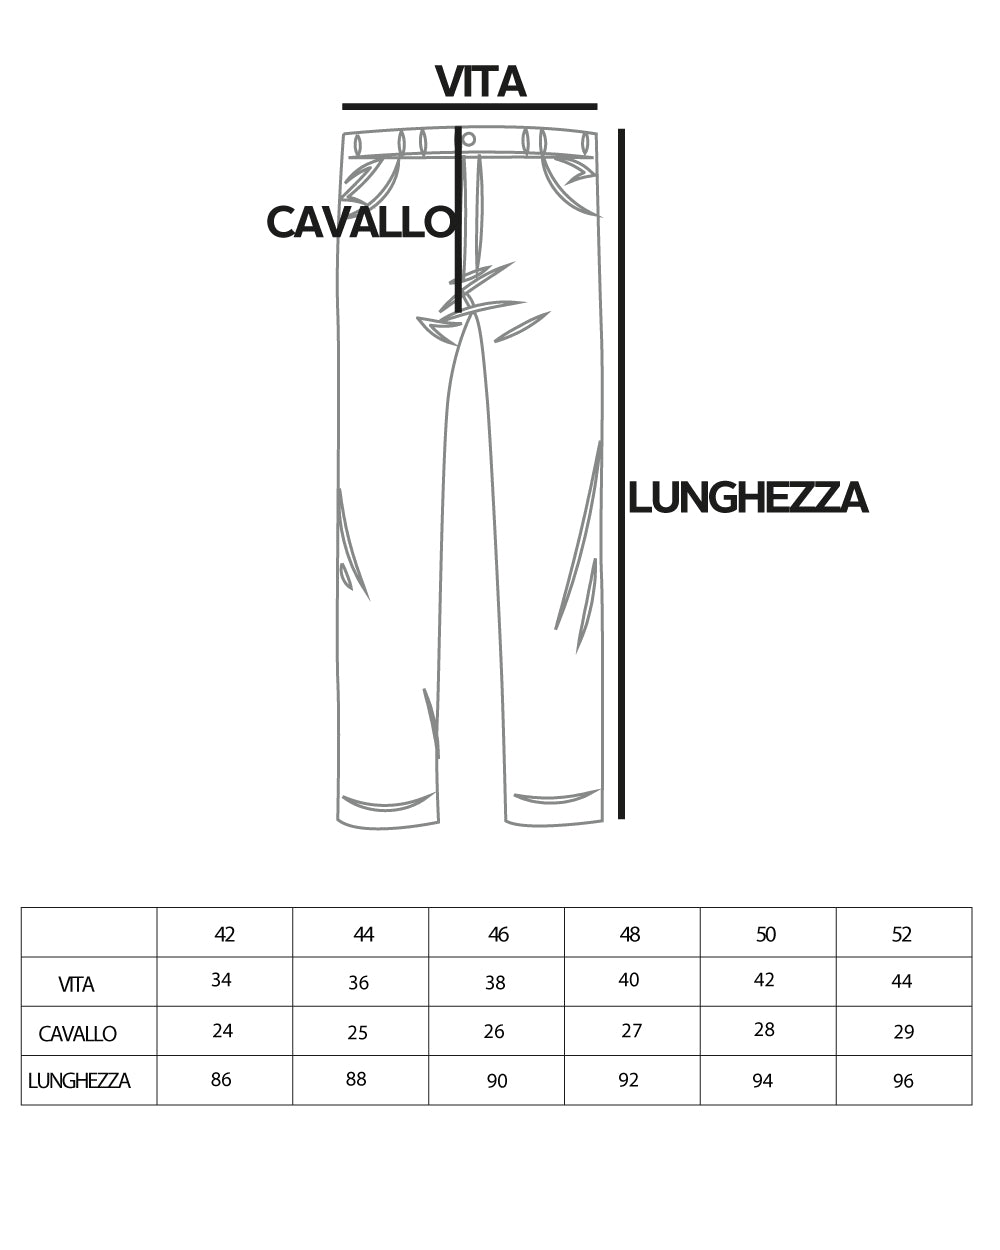 Pantaloni Uomo Tasca America Lungo Classico Casual Tinta Unita Rosa GIOSAL-P5902A